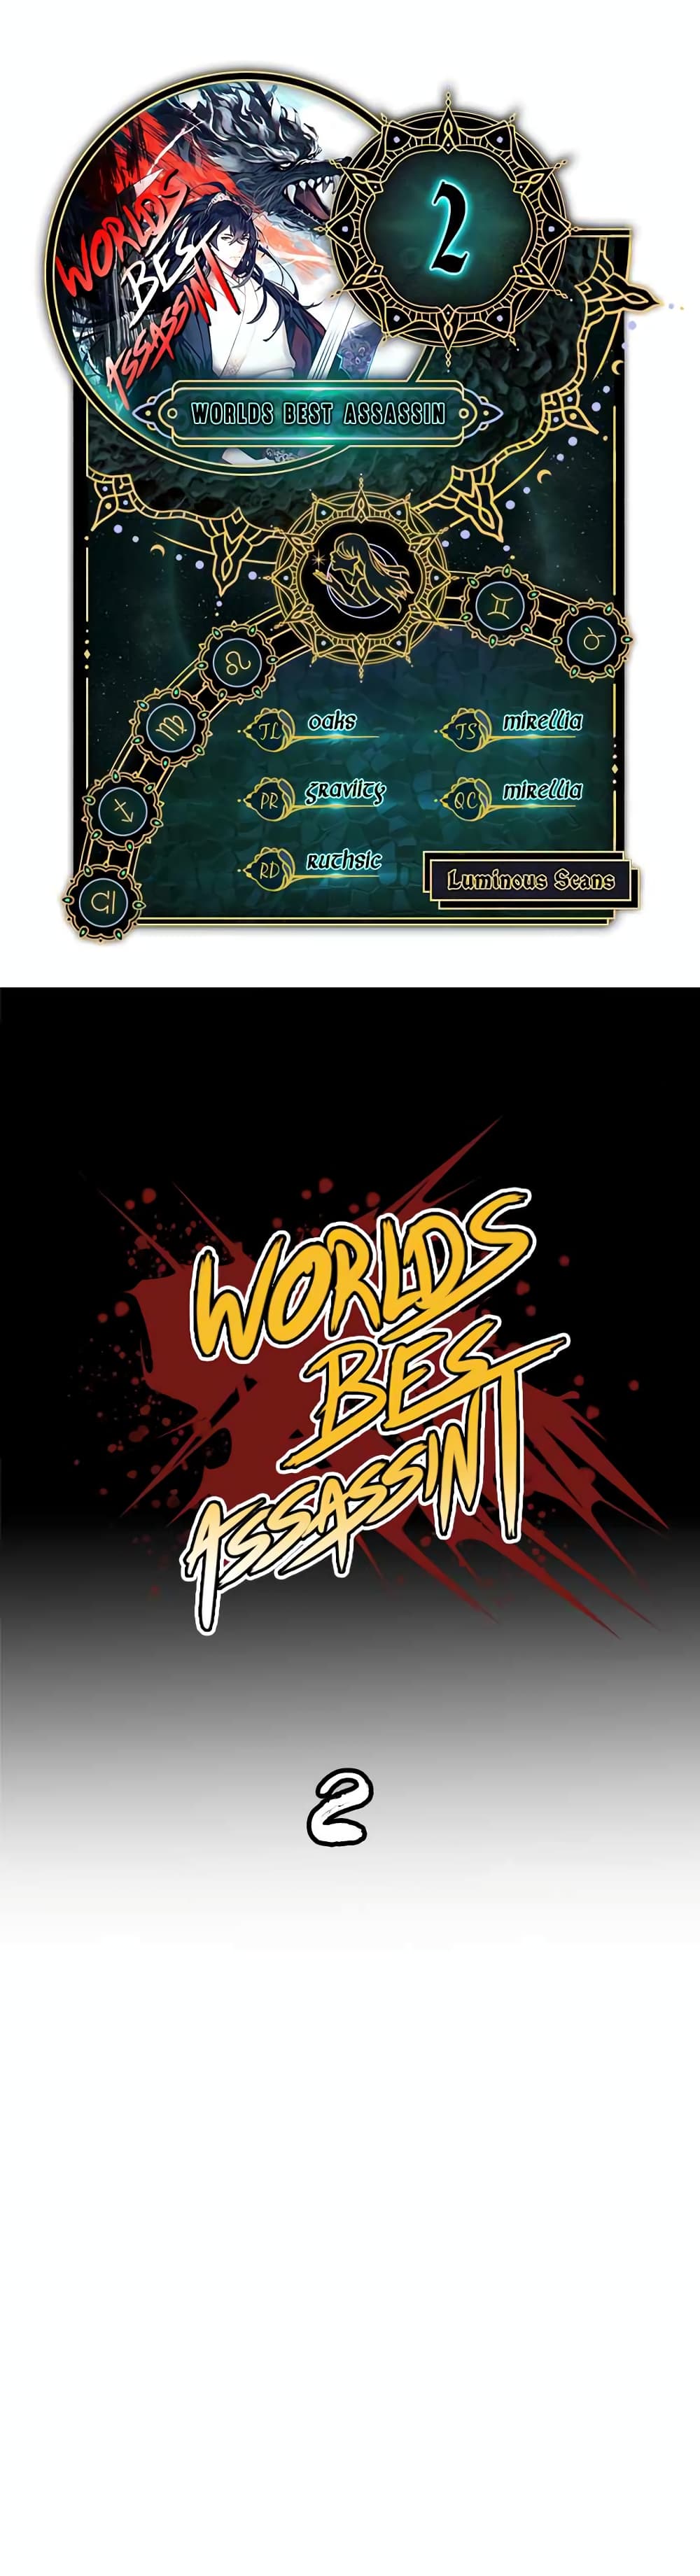 Worlds Best Assassin 2-2